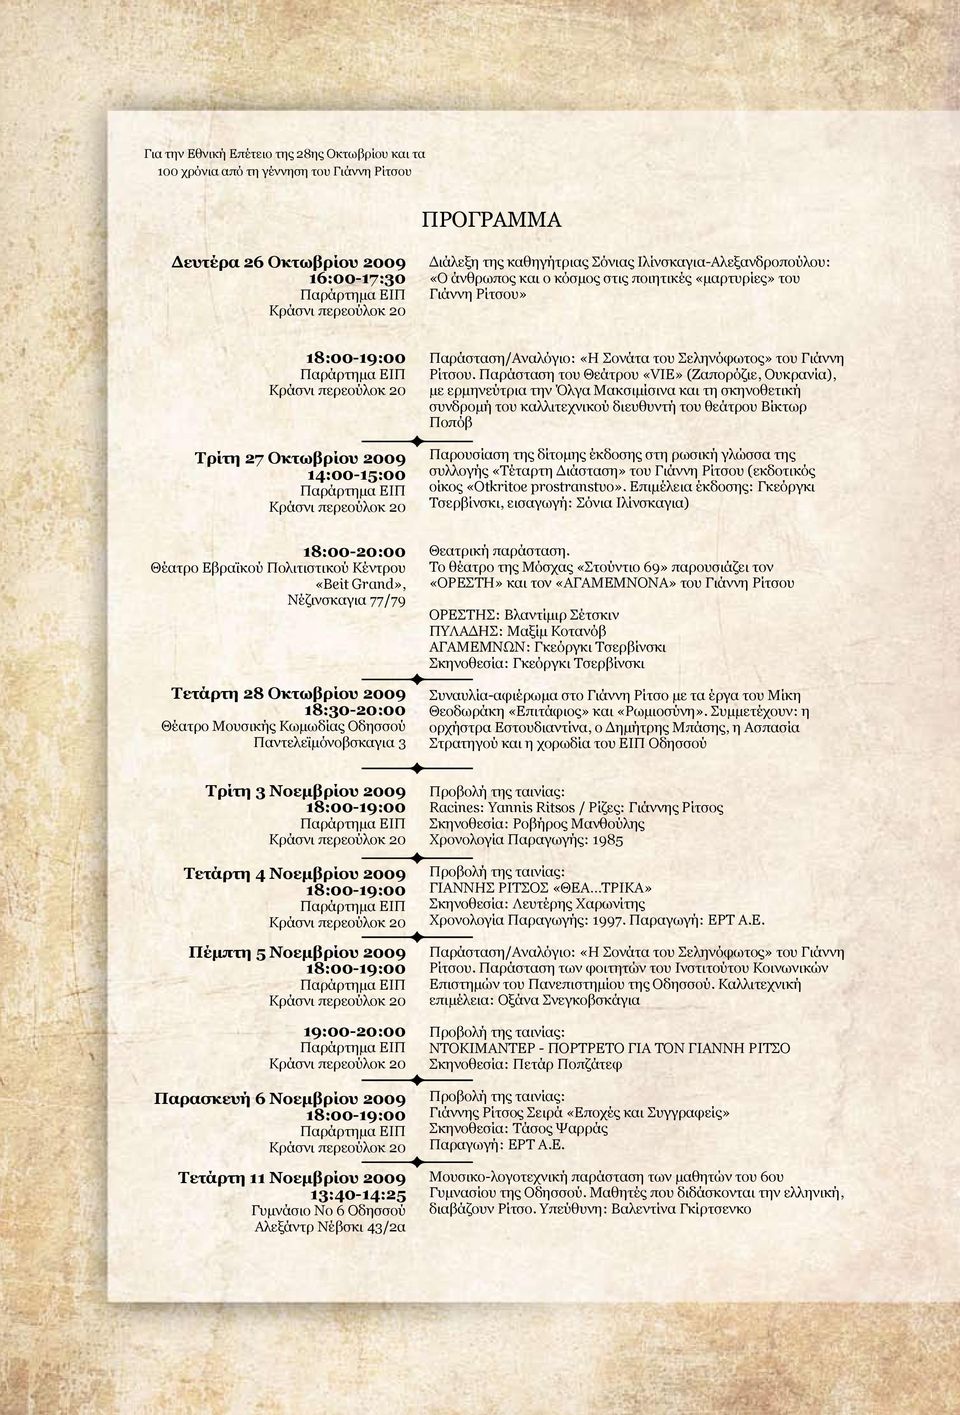 ΕΙΠ Κράσνι περεούλοκ 20 Παράσταση/Αναλόγιο: «Η Σονάτα του Σεληνόφωτος» του Γιάννη Ρίτσου.